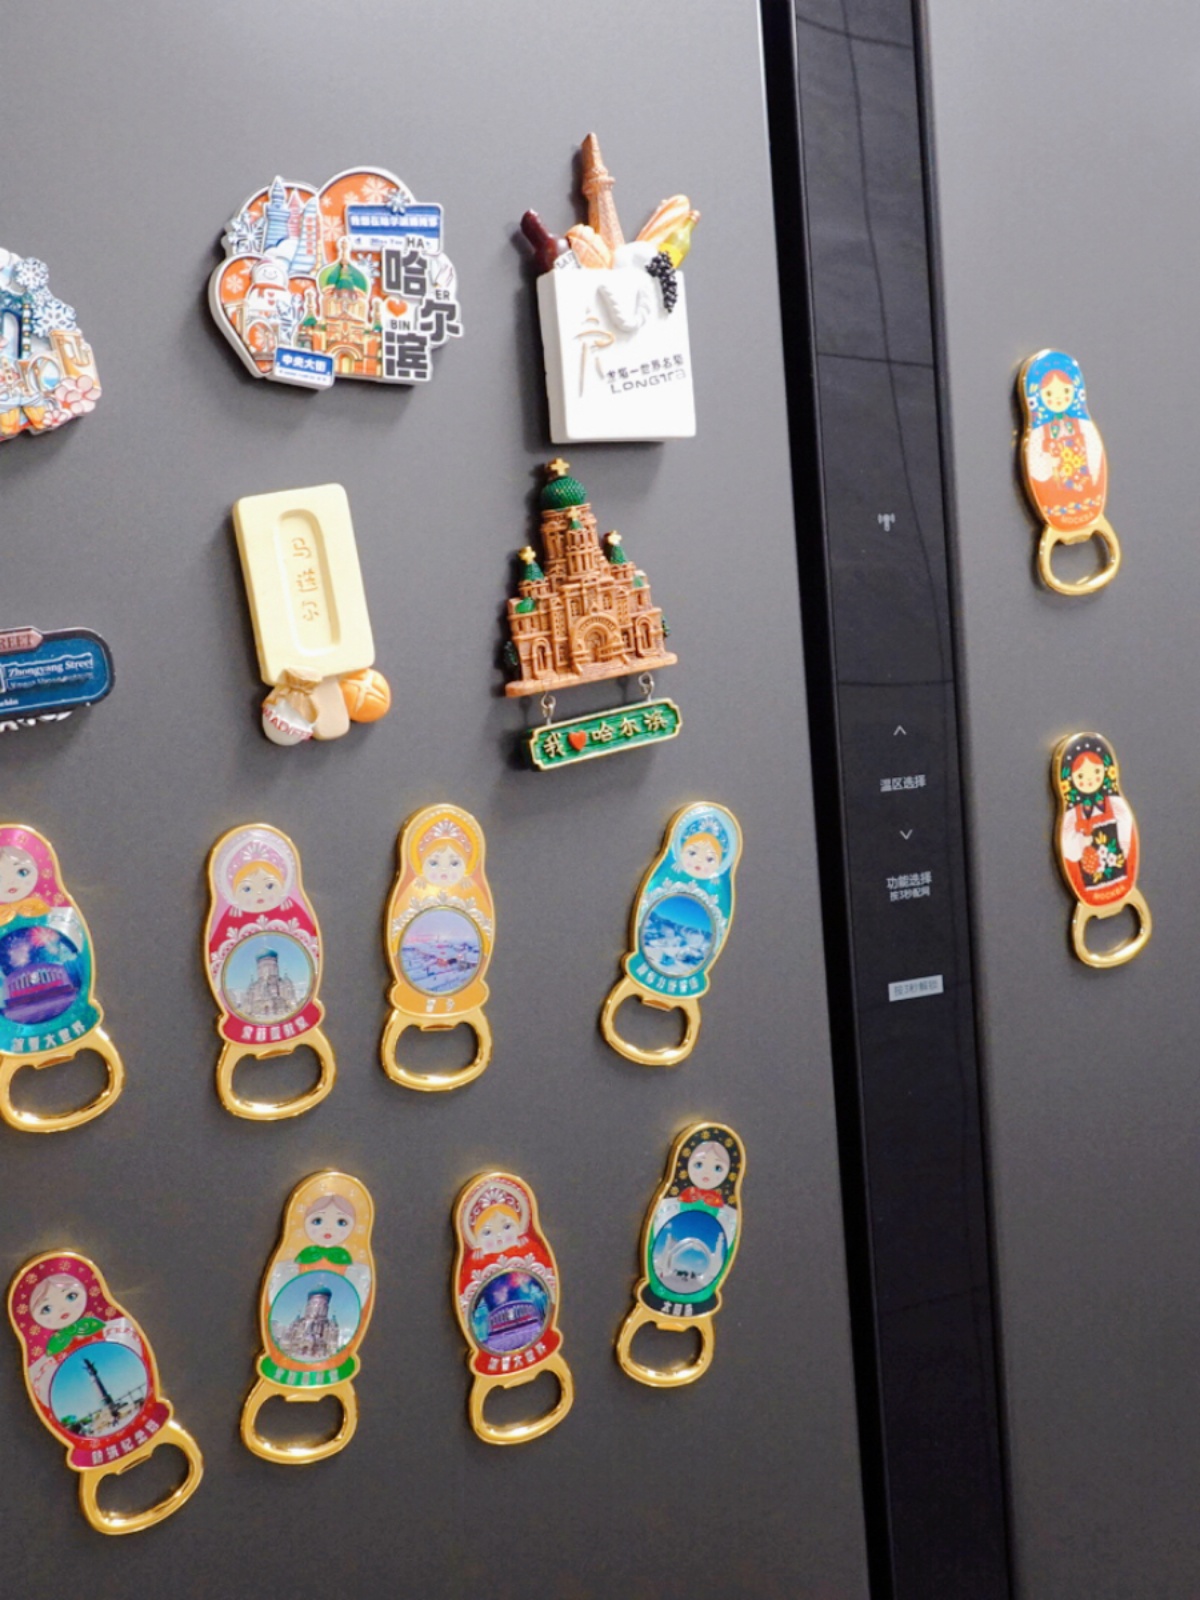 起子大创意哈尔滨冰箱贴街特色纪念品中旅游磁贴啤酒瓶央套娃礼物